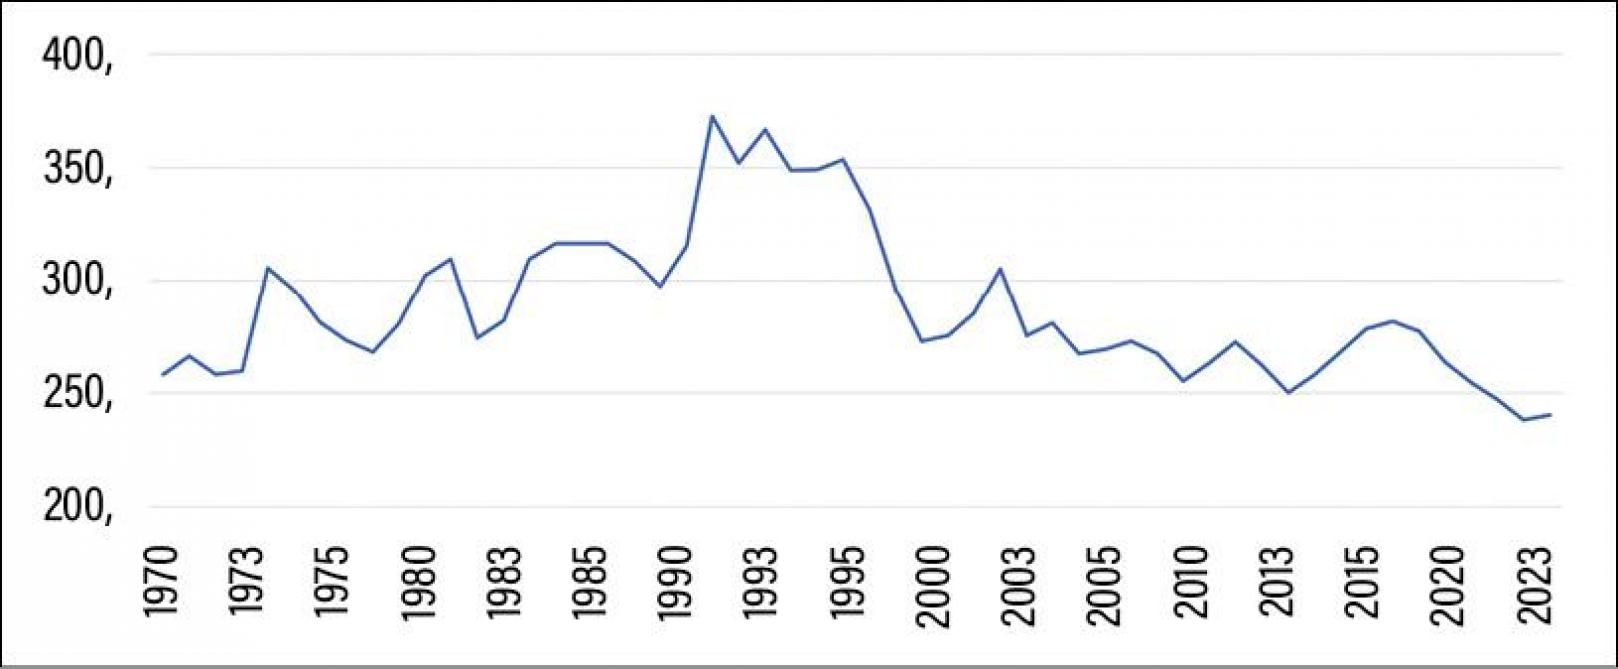 Figuur 1: Rundveeslachtcijfers in België (x 1.000 ton) tussen 1970 en 2023. België produceert anno 2023 minder rundvlees dan in 1970.